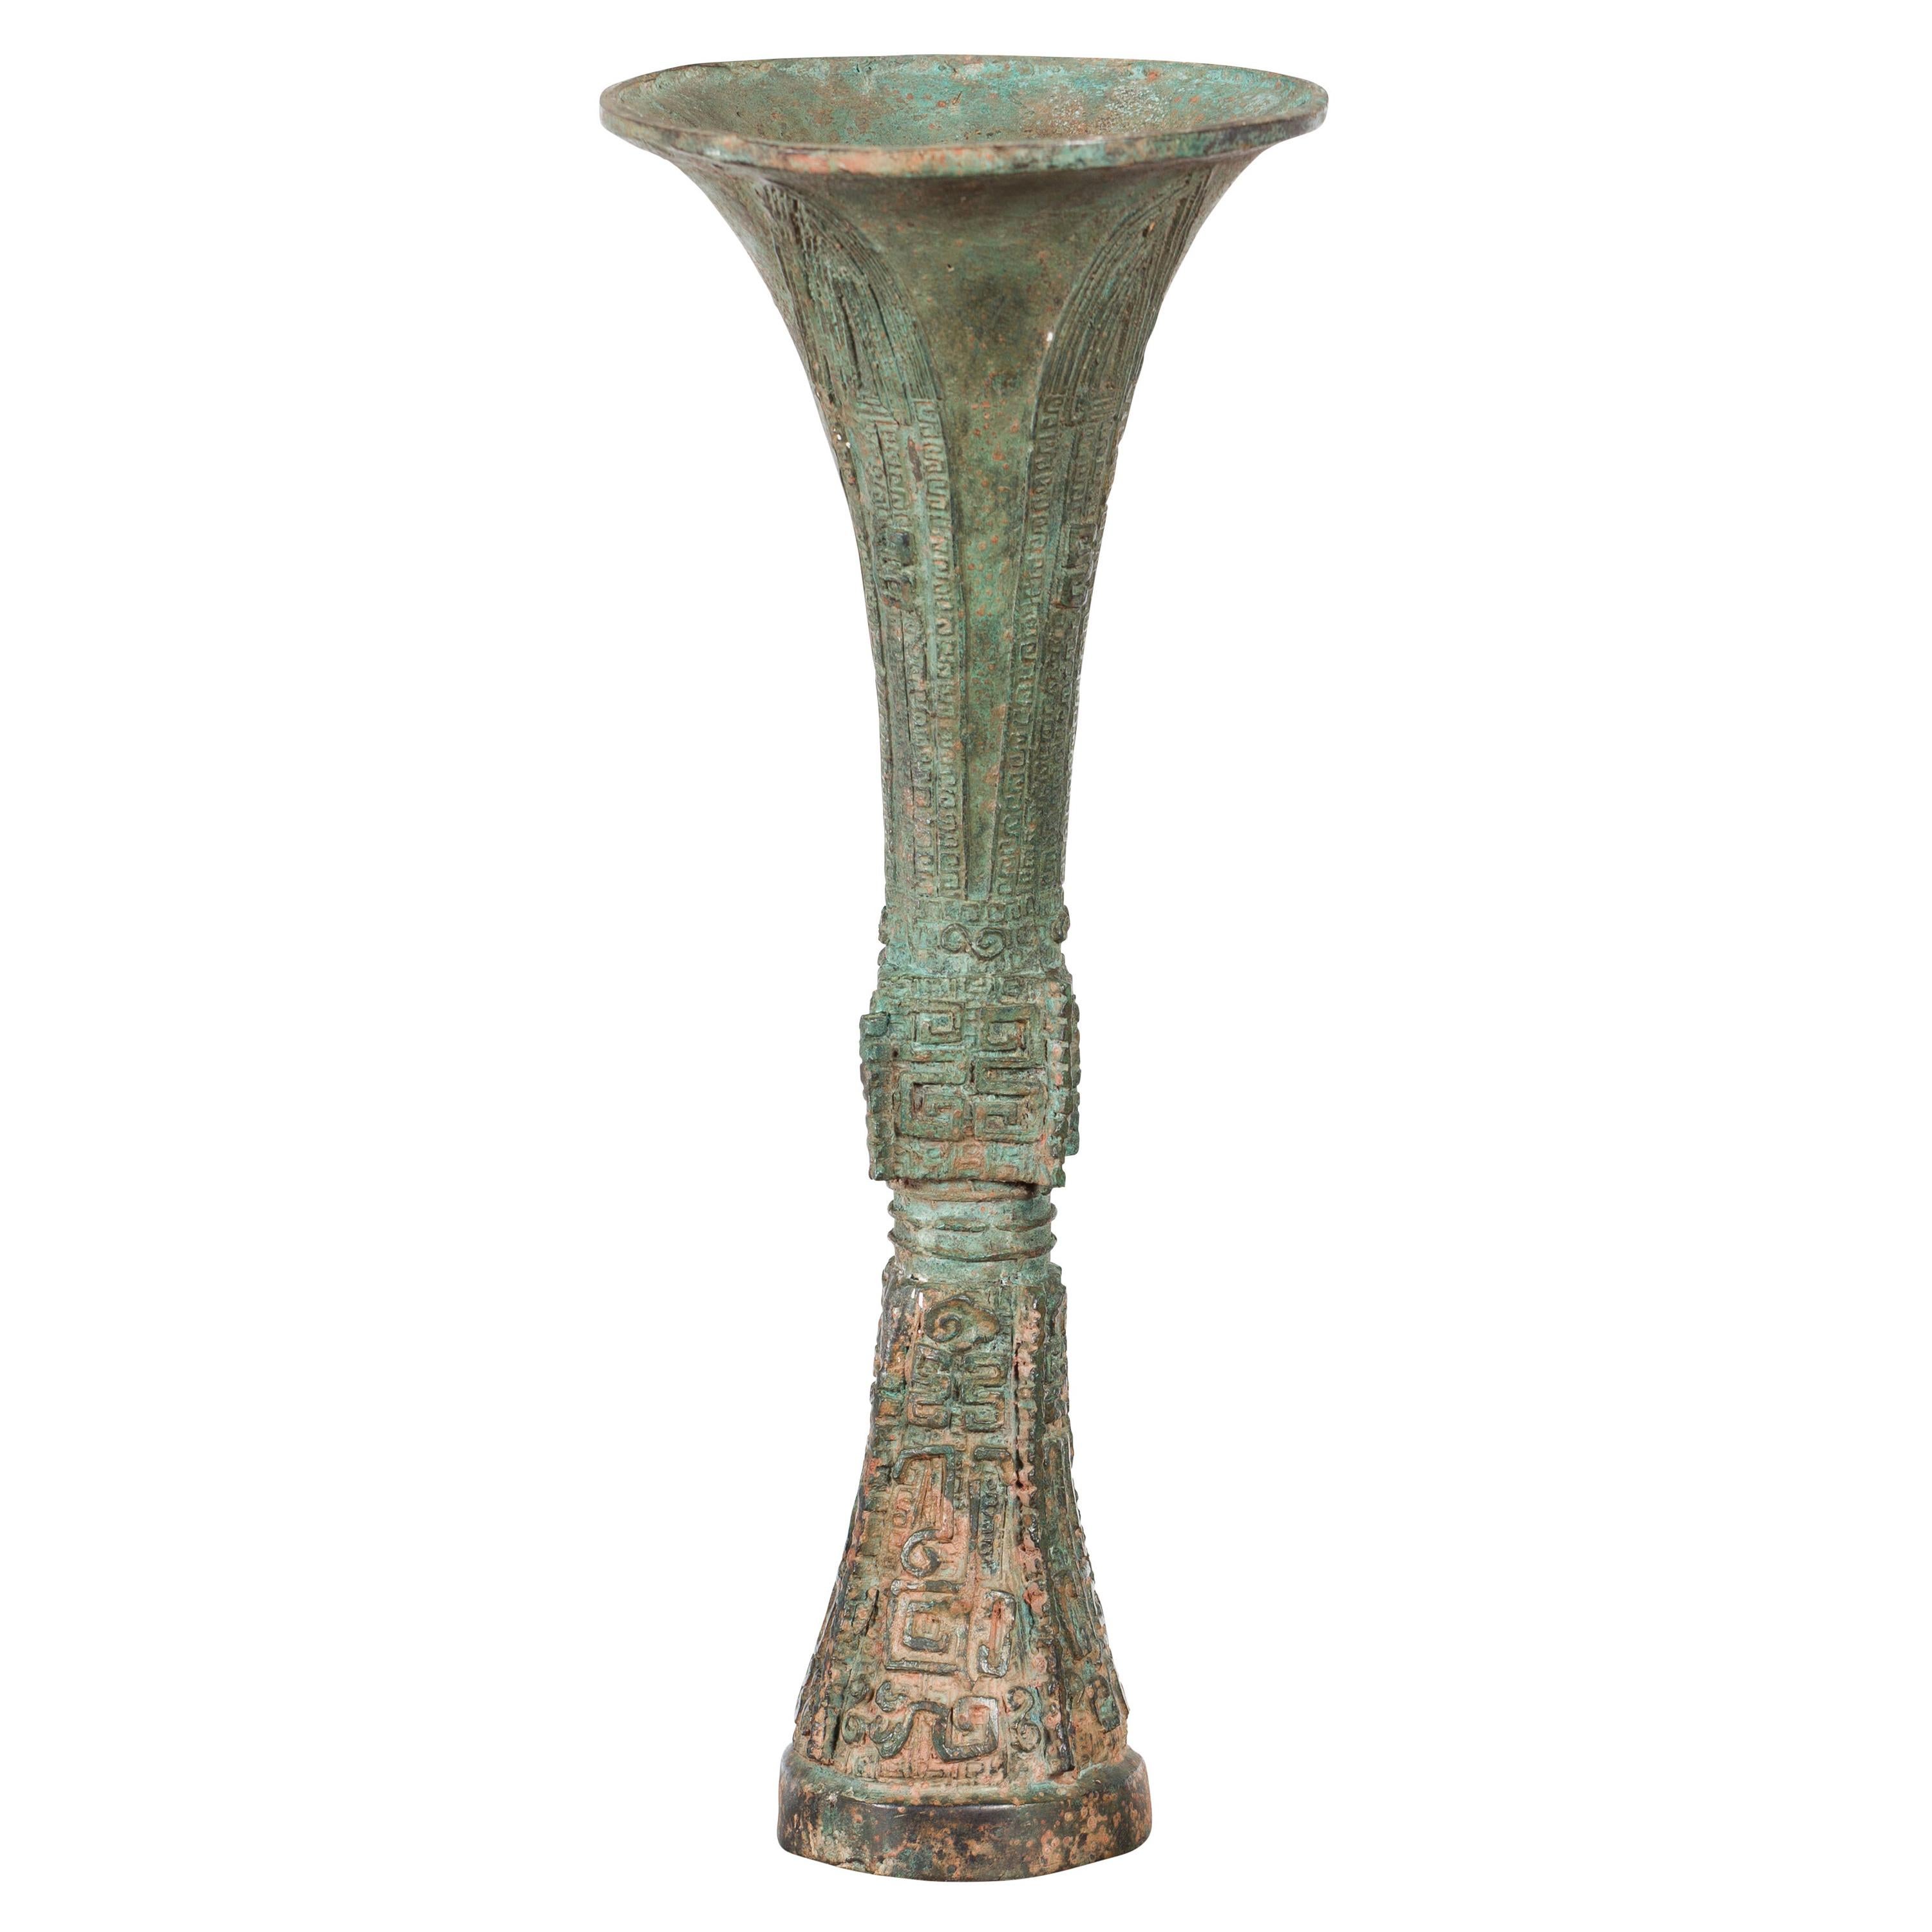 Bronze-Zeremoniengefäß in Flute-Form aus der Han-Dynastie